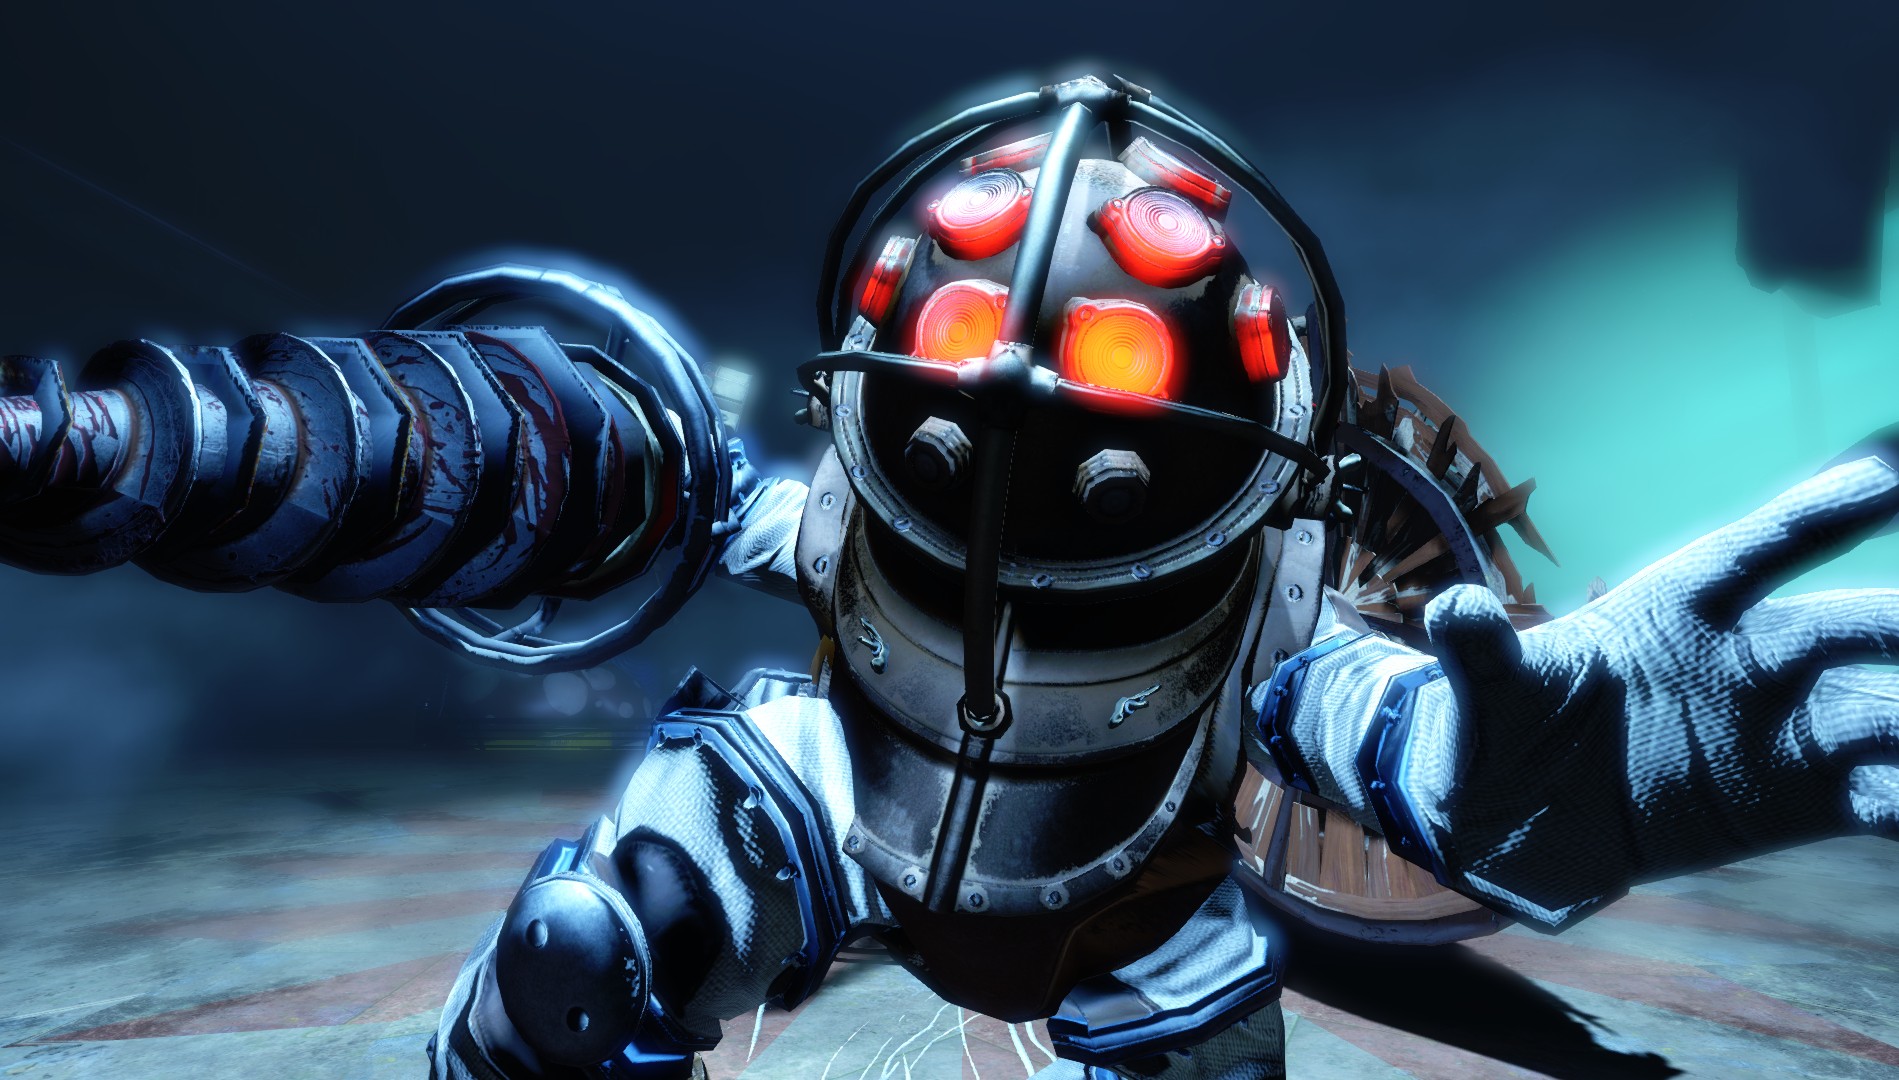 BioShock Infinite: Burial at Sea PC Review